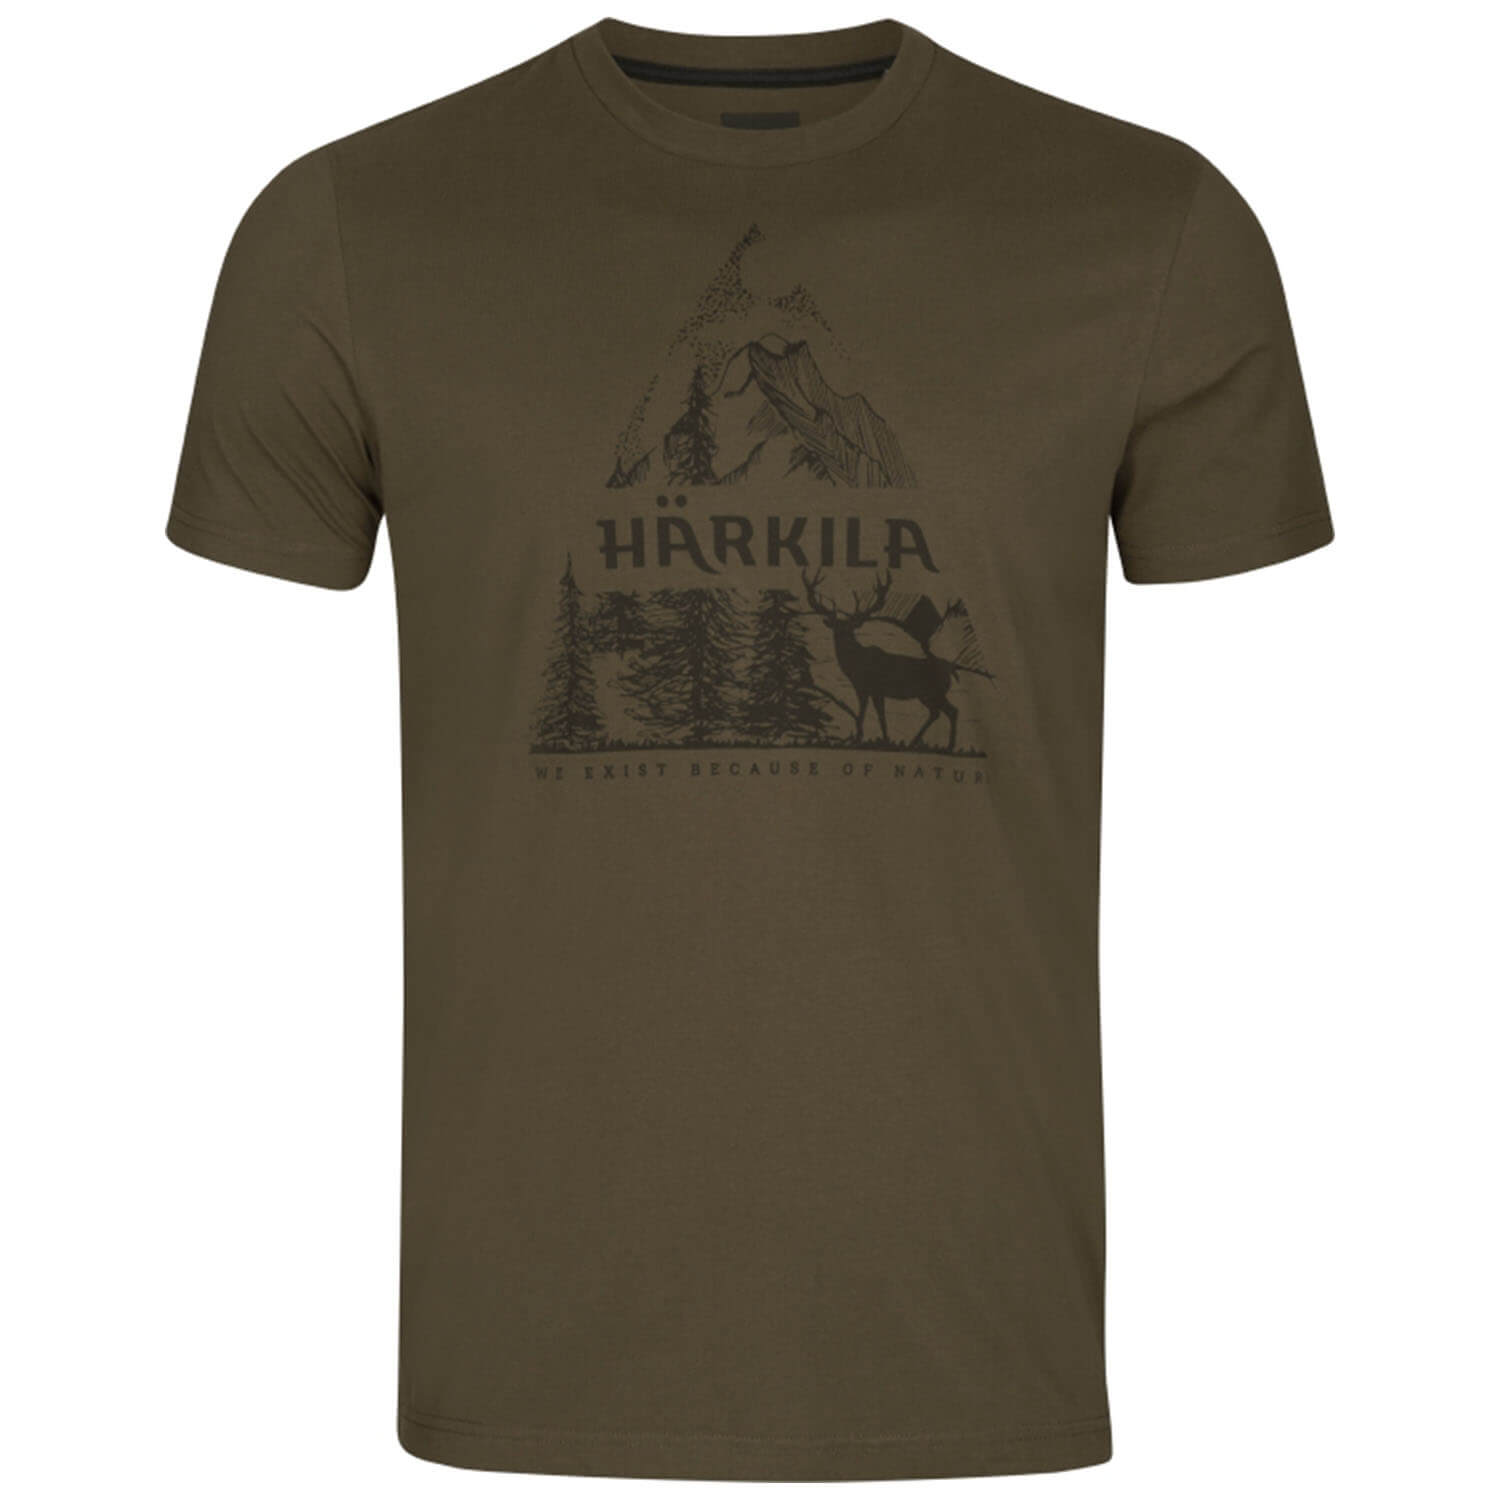  Härkila Nature T-shirt (Willow Green) - T-Shirts